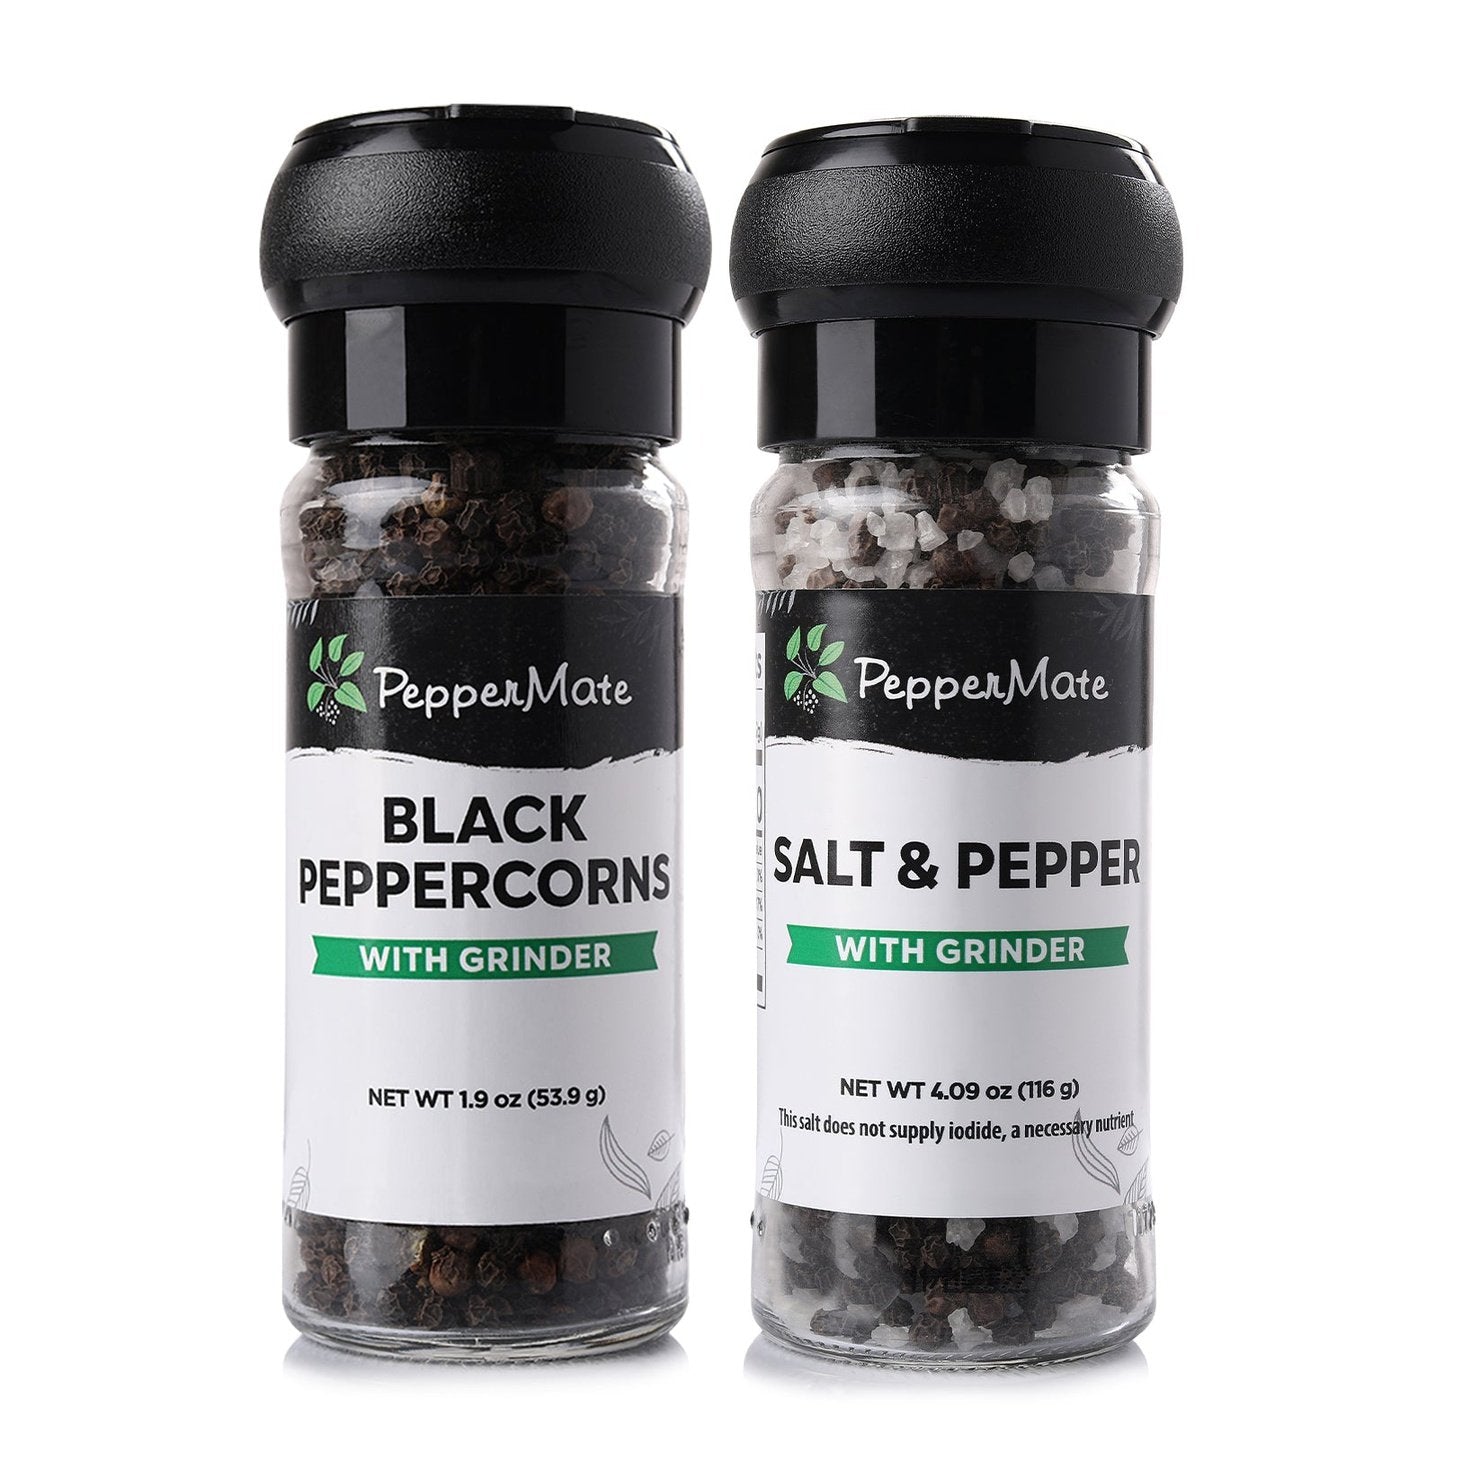 Wooden Salt & Pepper Grinder Set – HOME BEIS